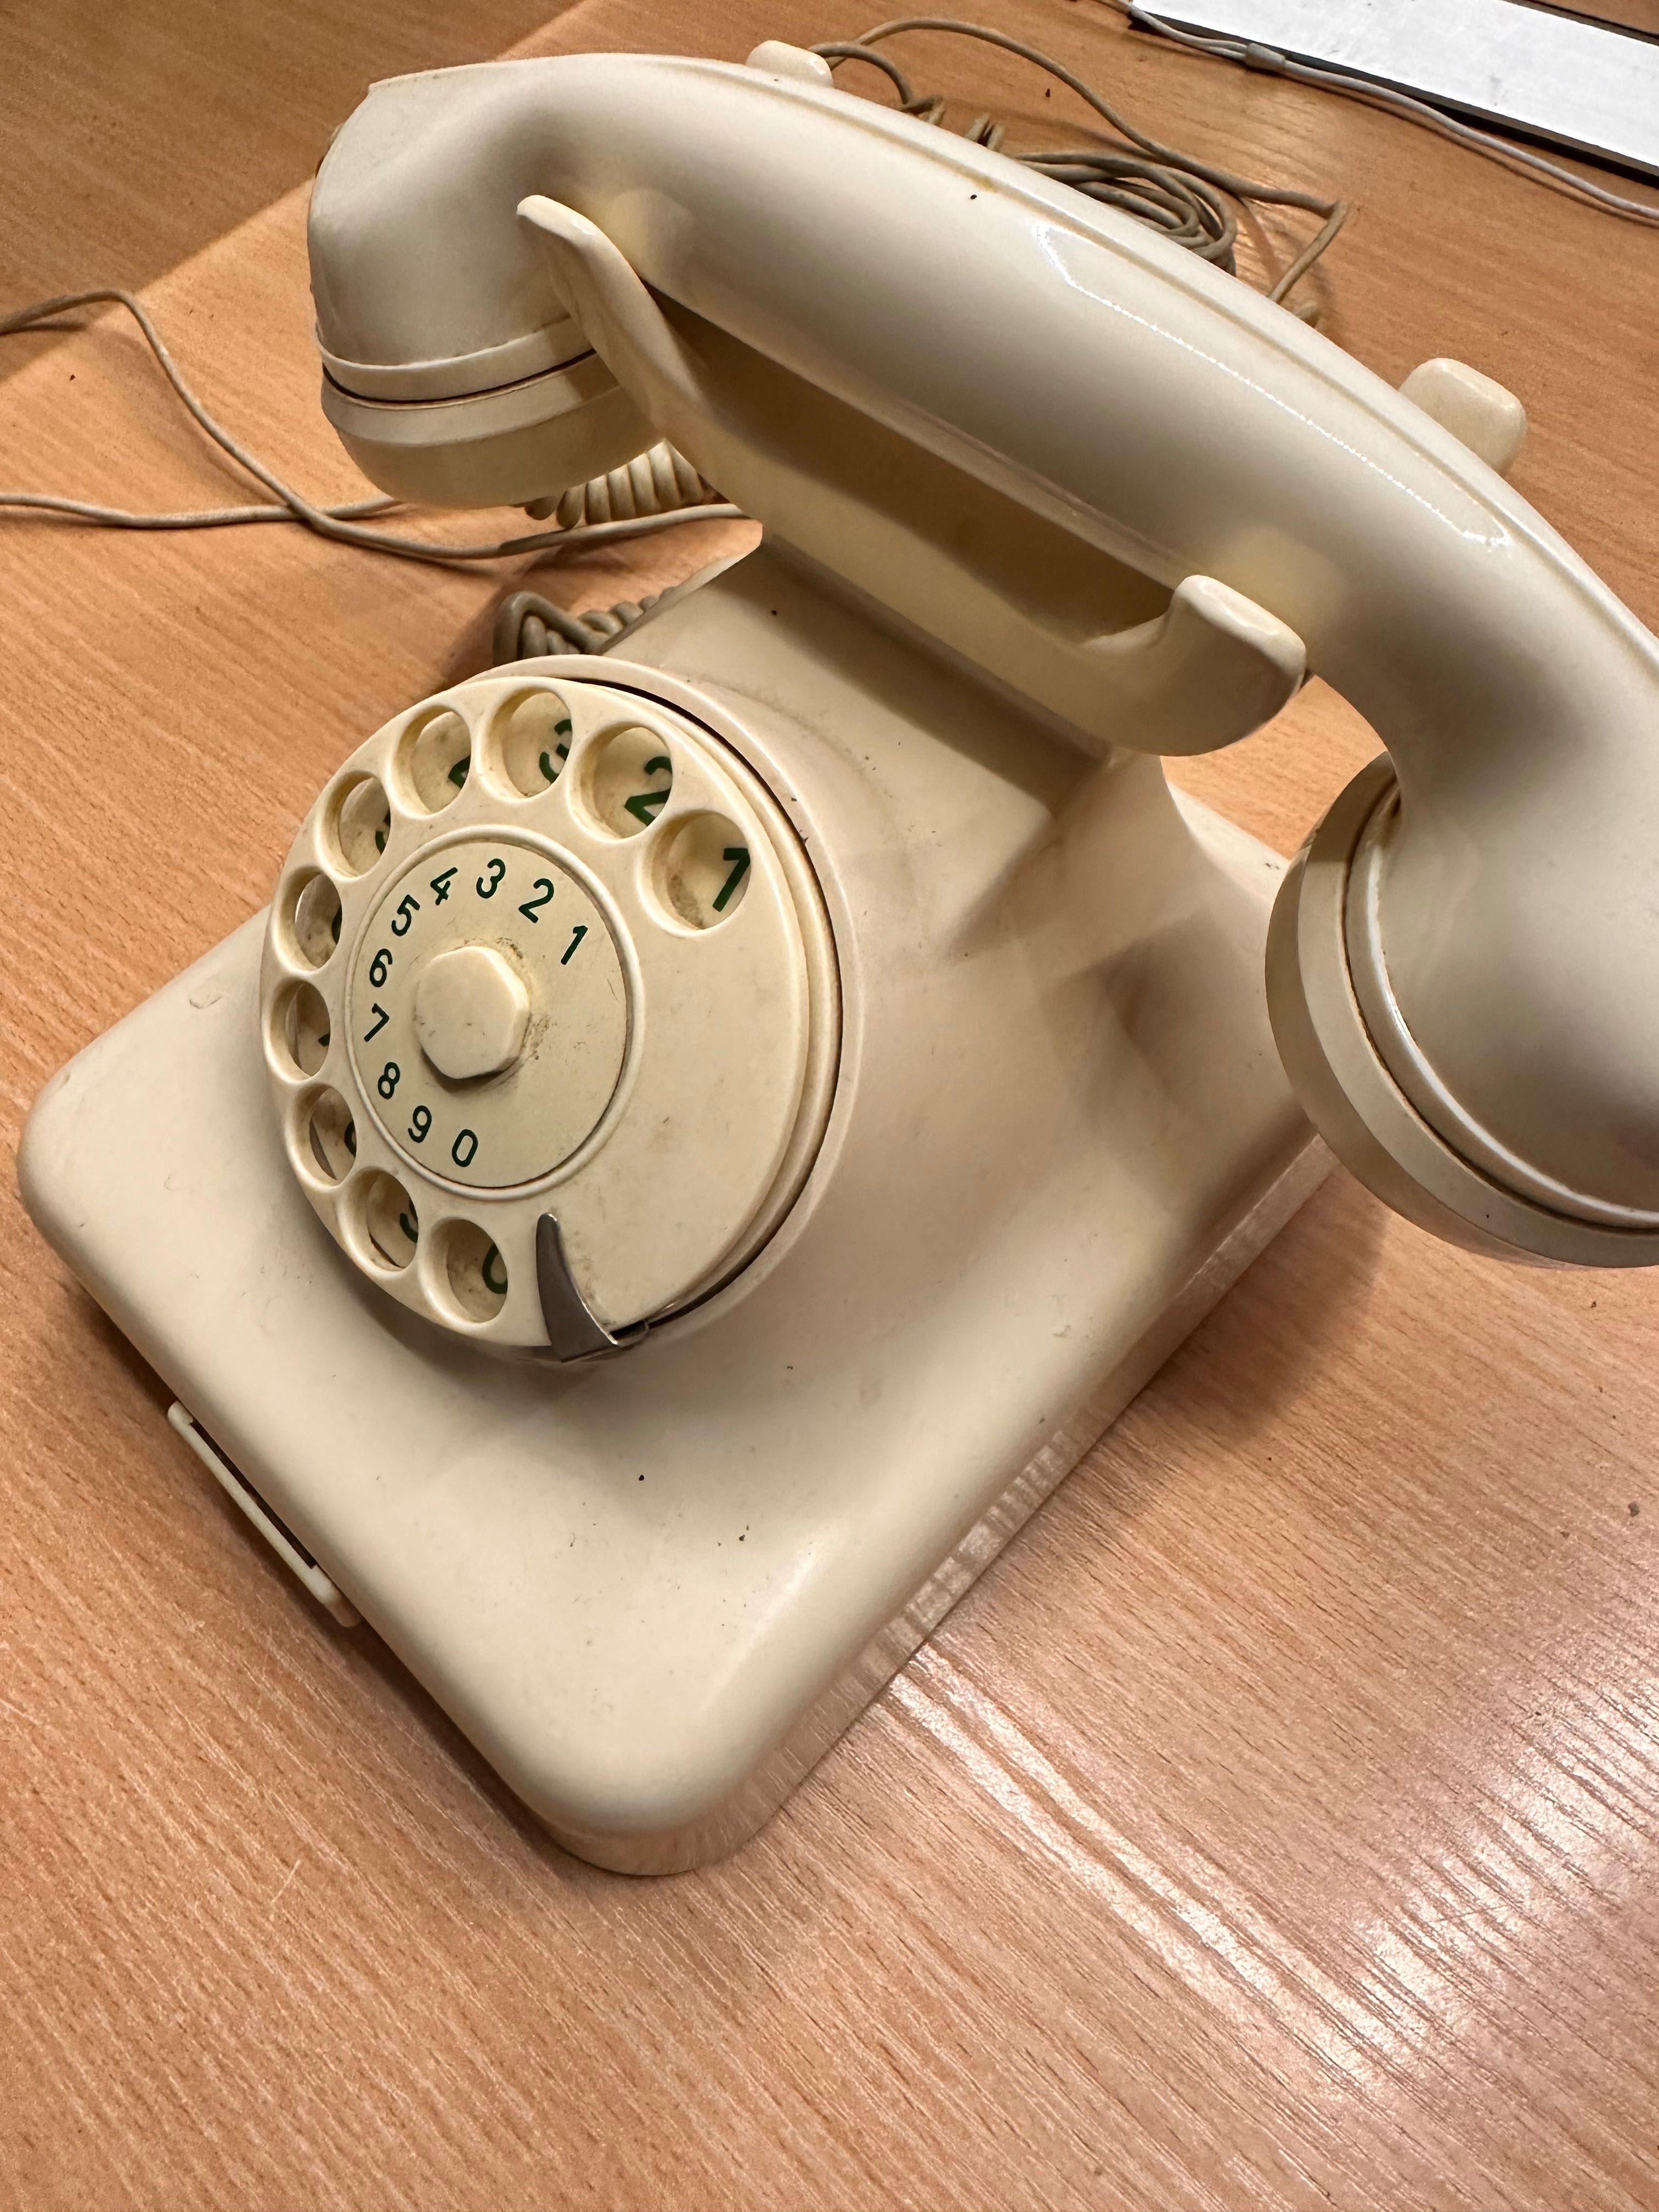 telefon Siemens W48 z lat 60tych